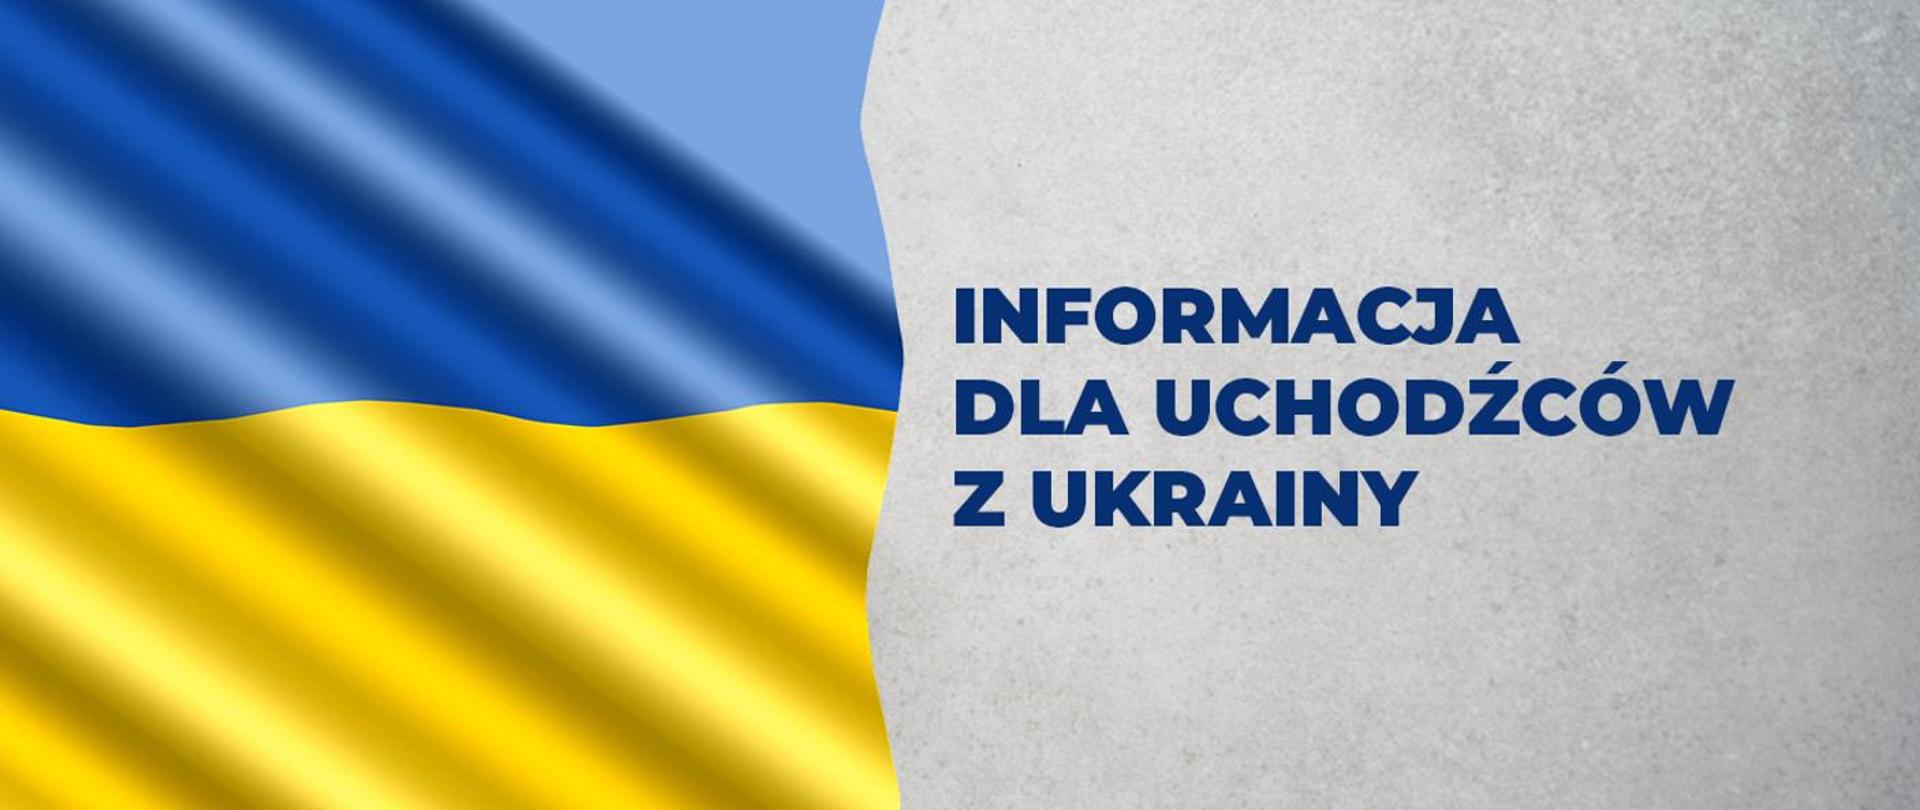 Grafika przedstawia flagę Ukrainy po lewej stronie, po prawej tekst: Informacja dla uchodźców z Ukrainy